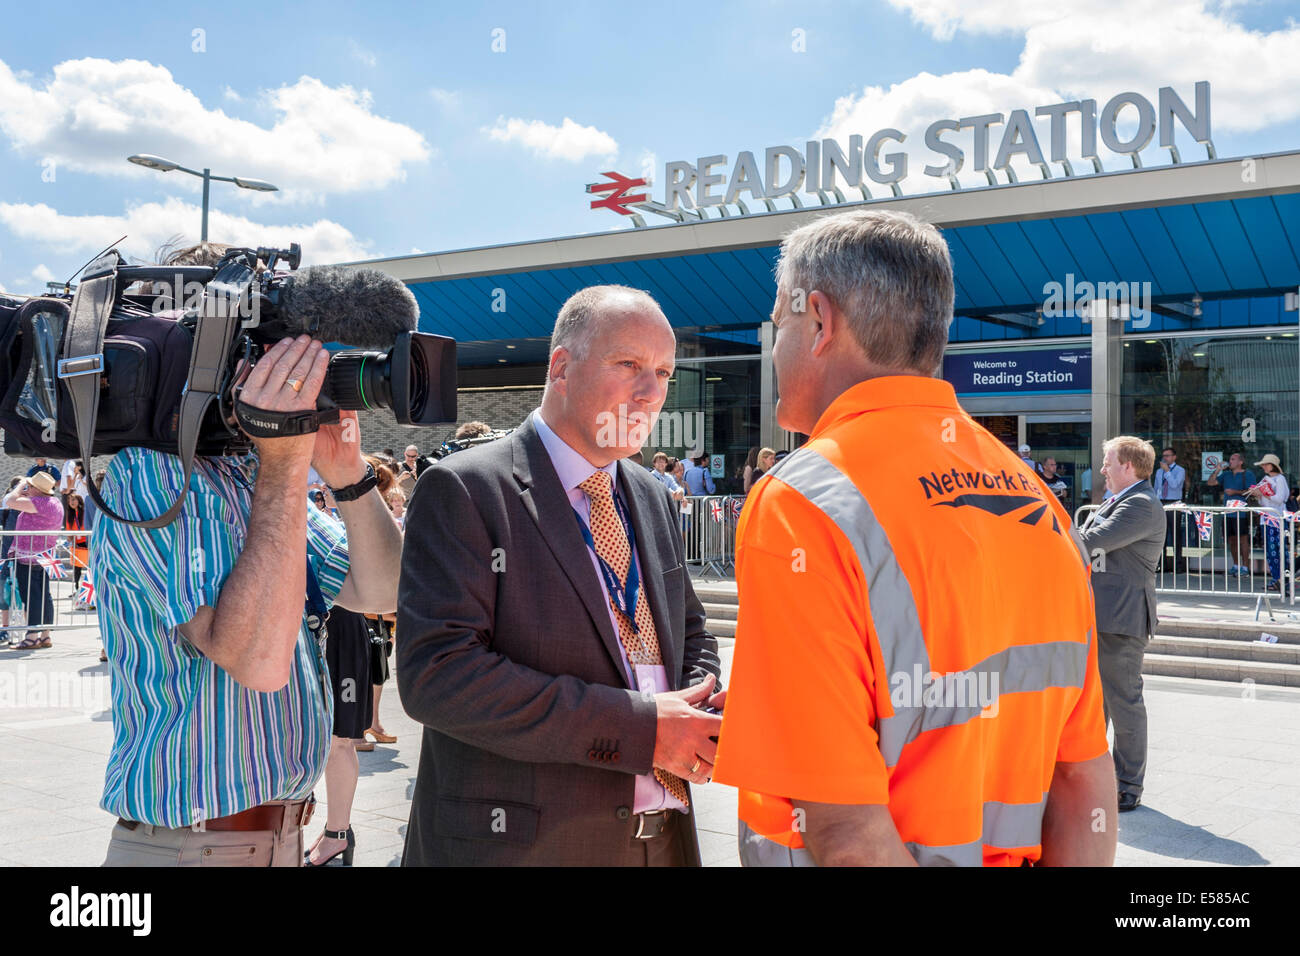 Journalist und Kameramann interview Mitarbeiterin von Network Rail die offizielle Eröffnung der Lesestation von HM die Königin. Stockfoto